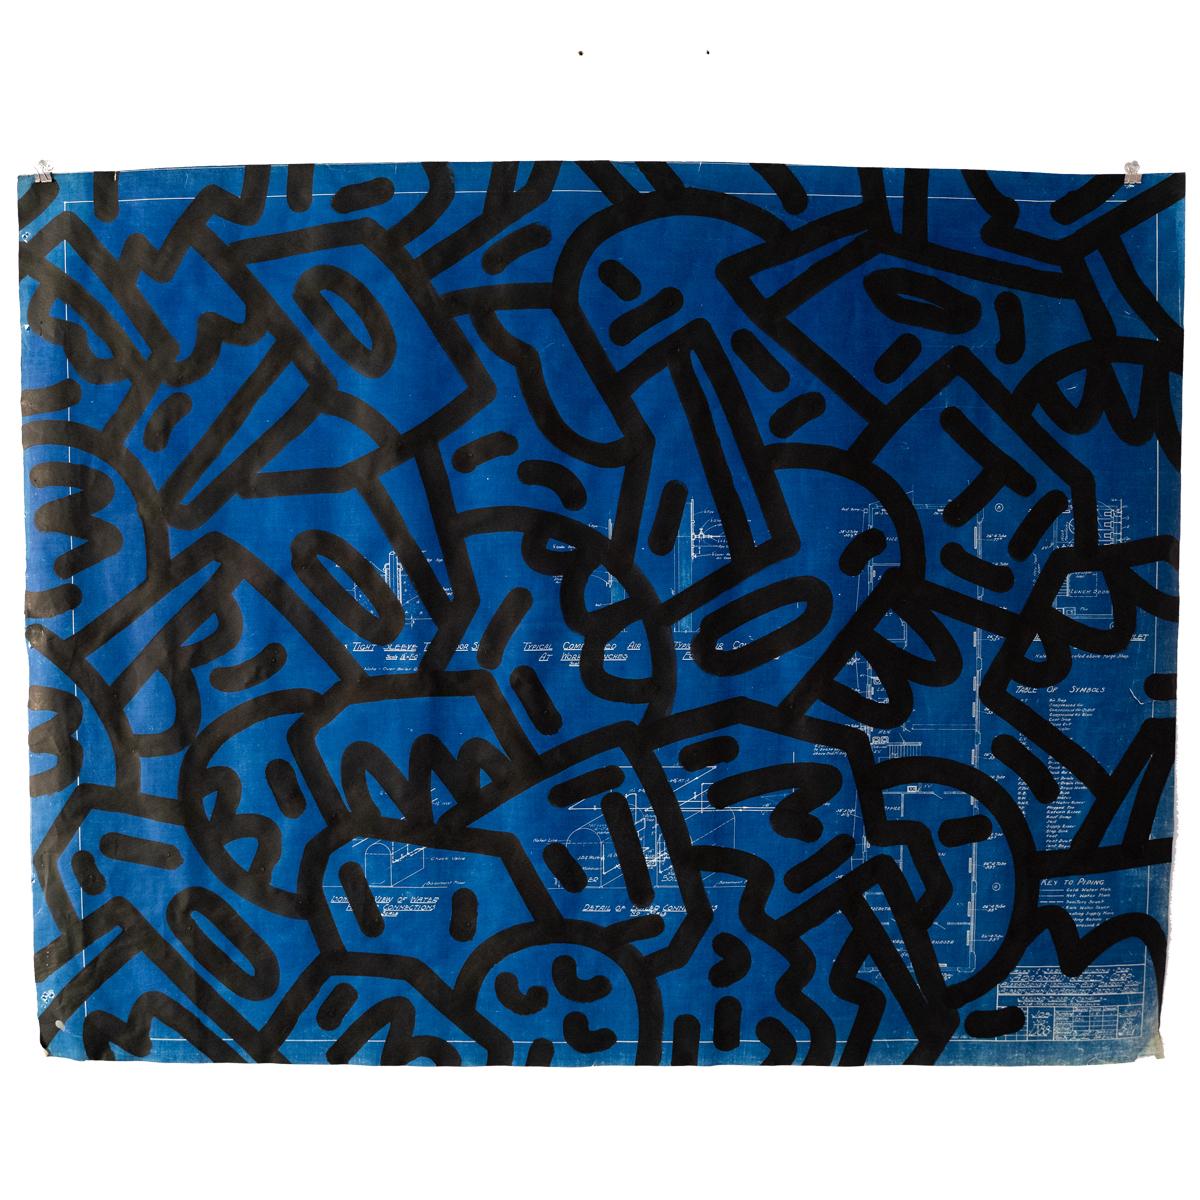 Mike Han Abstract Drawing – Moderner Vandalismus der Moderne: Albert Kahn, Blatt 3M